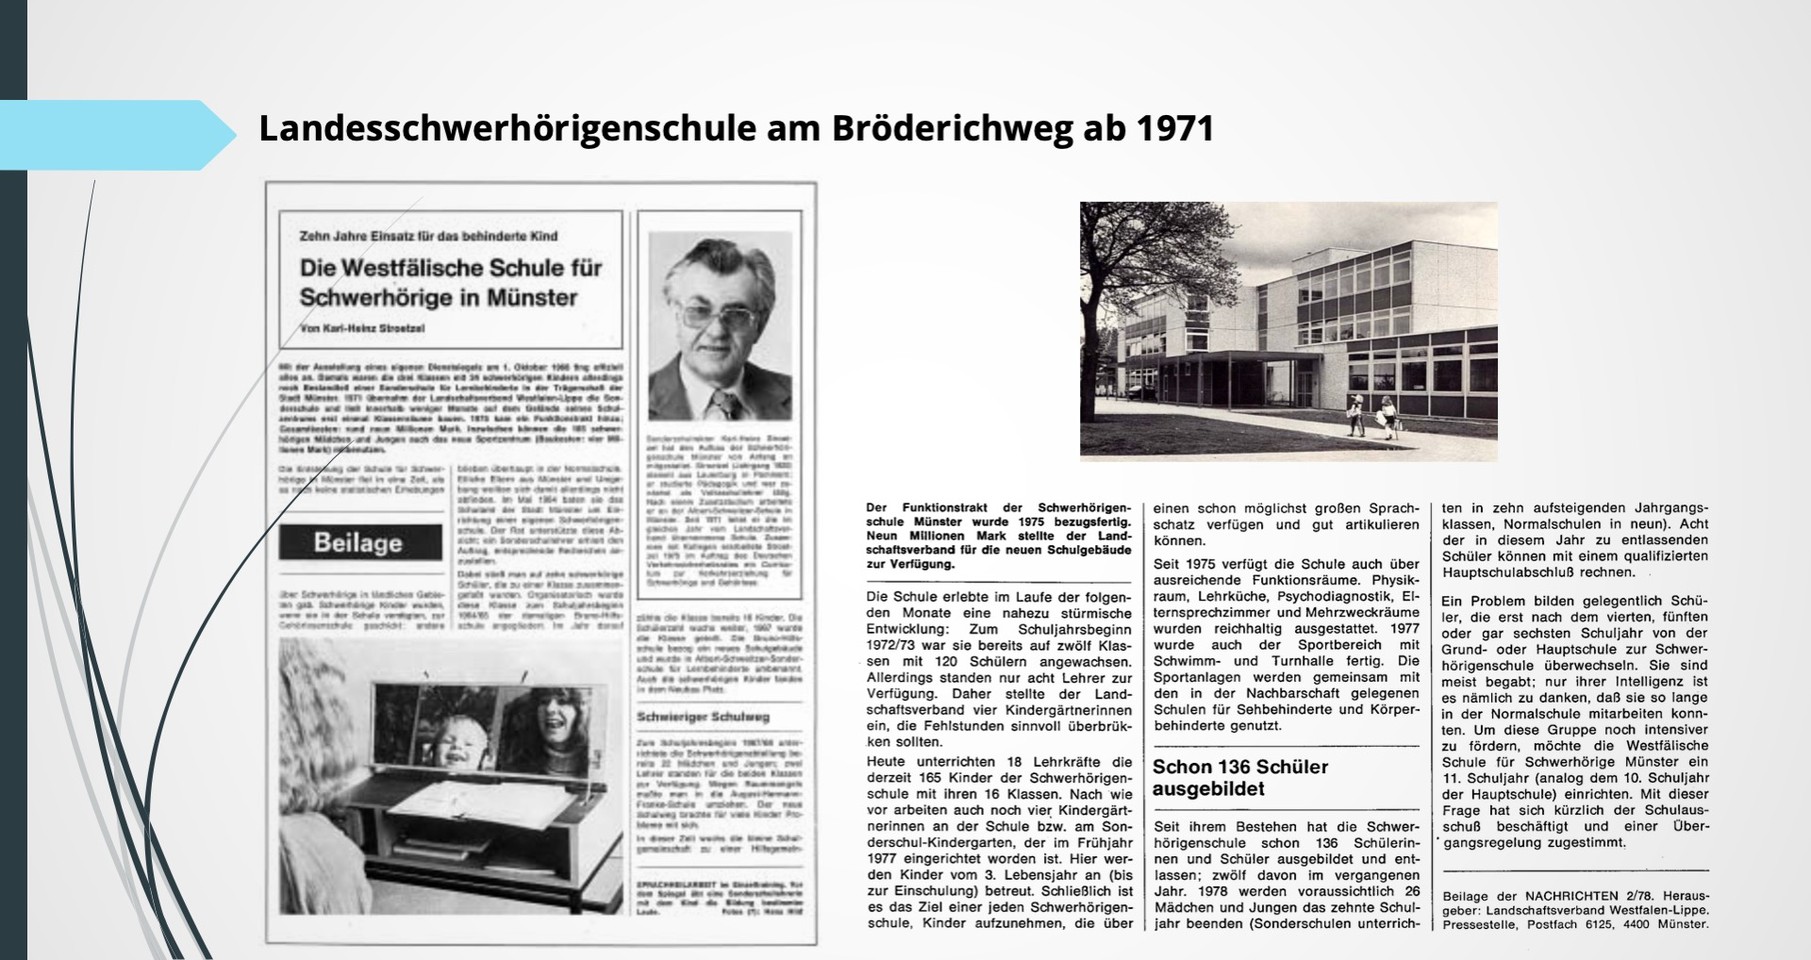 Zeitungsartikel über die Landesschwerhörigenschule am Bröderichweg ab 1971